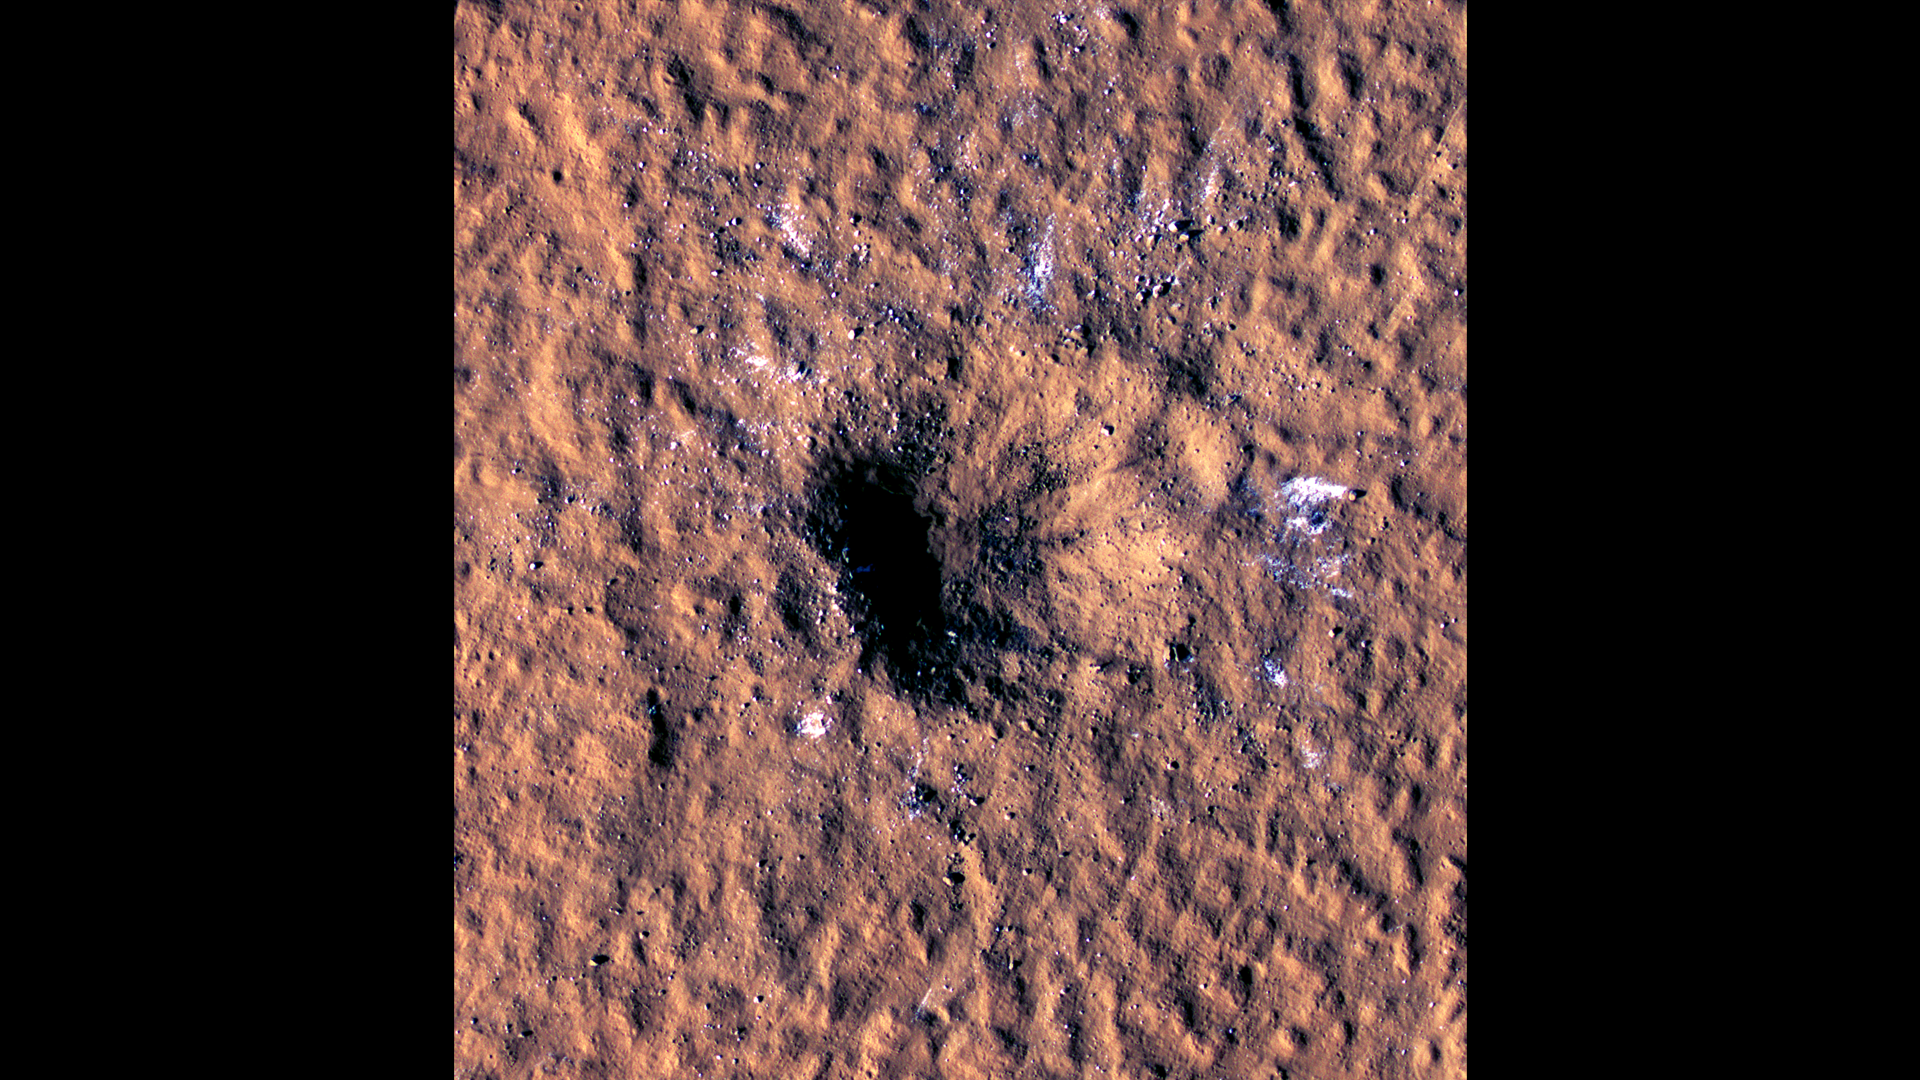 Le cratère d'impact sur le sol de Mars photographié en orbite par la sonde MRO. © Nasa, JPL-Caltech, University of Arizona